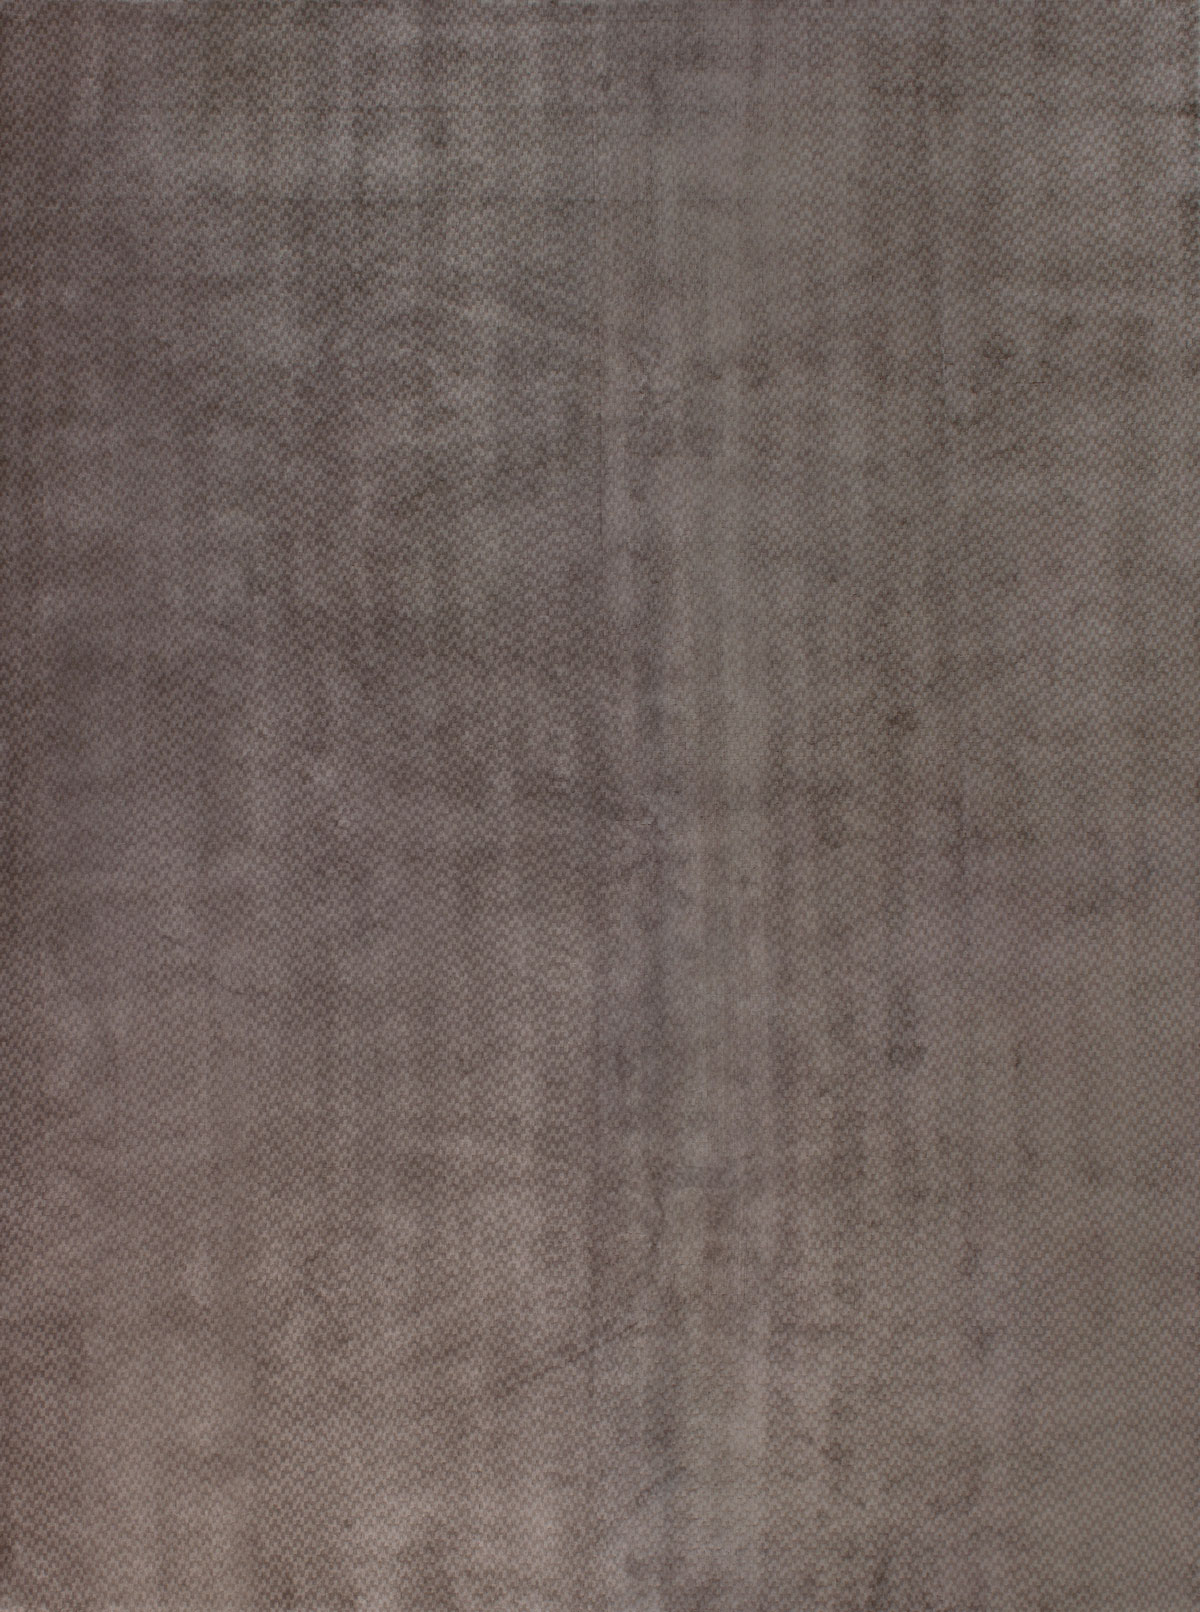 Jordan Taupe Rug ☞ Size: 300 x 400 cm